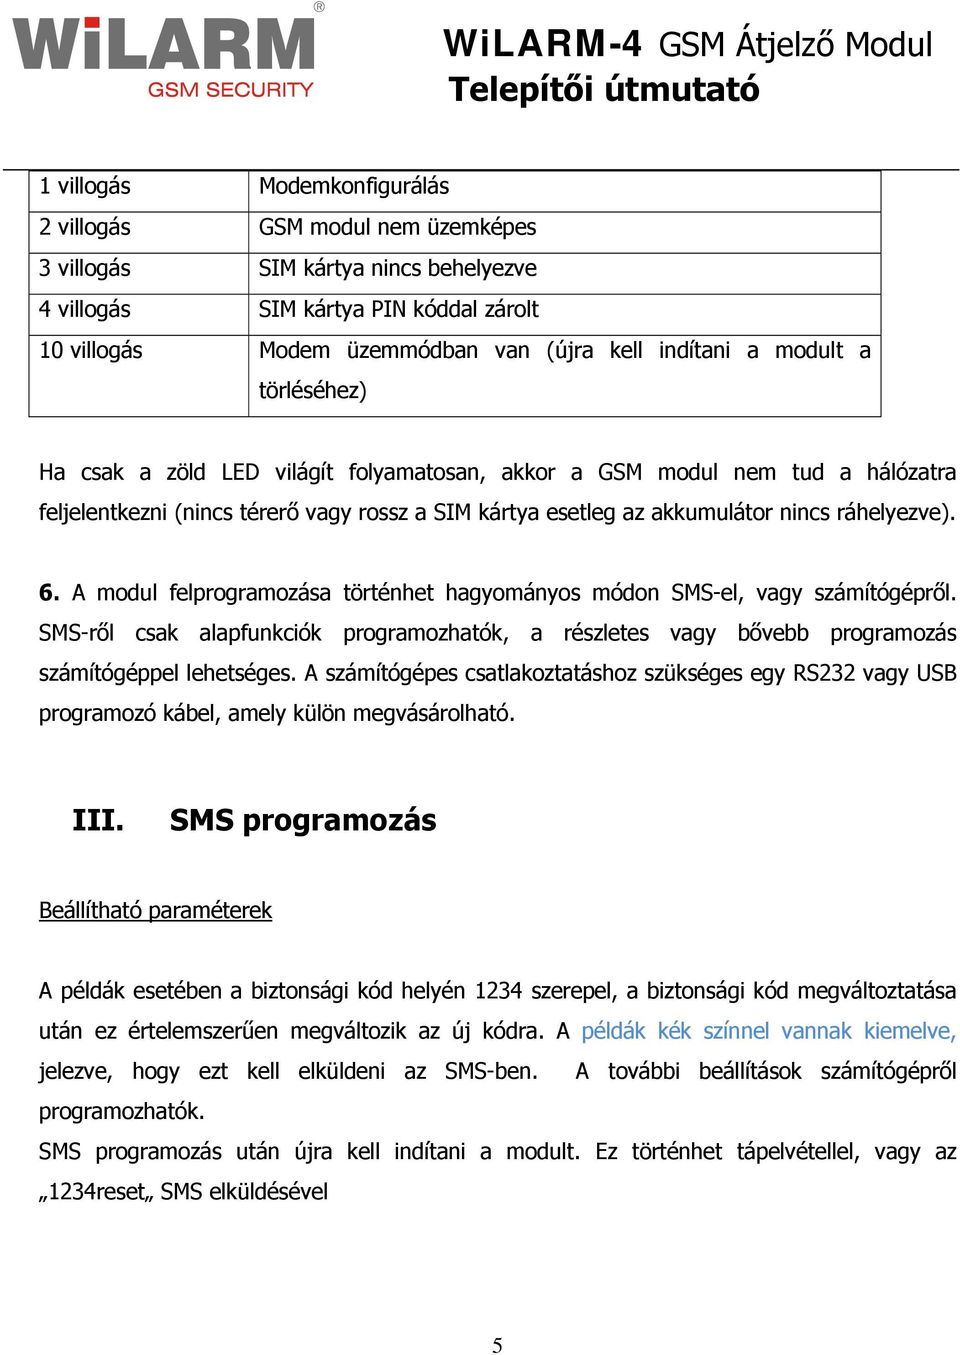 A modul felprogramozása történhet hagyományos módon SMS-el, vagy számítógépről. SMS-ről csak alapfunkciók programozhatók, a részletes vagy bővebb programozás számítógéppel lehetséges.